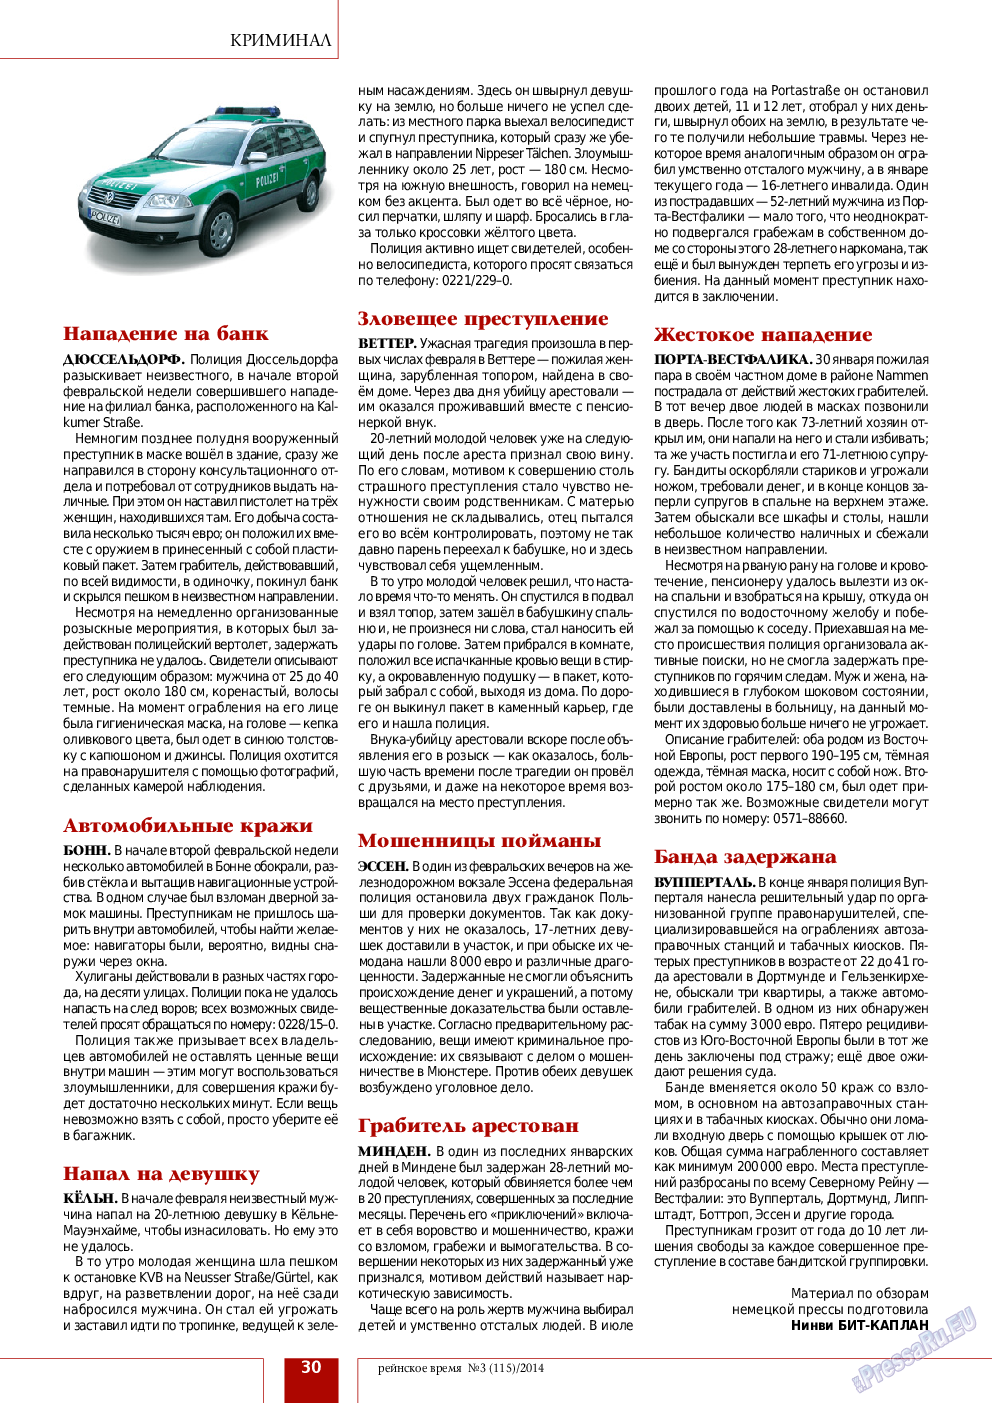 Рейнское время, журнал. 2014 №3 стр.30